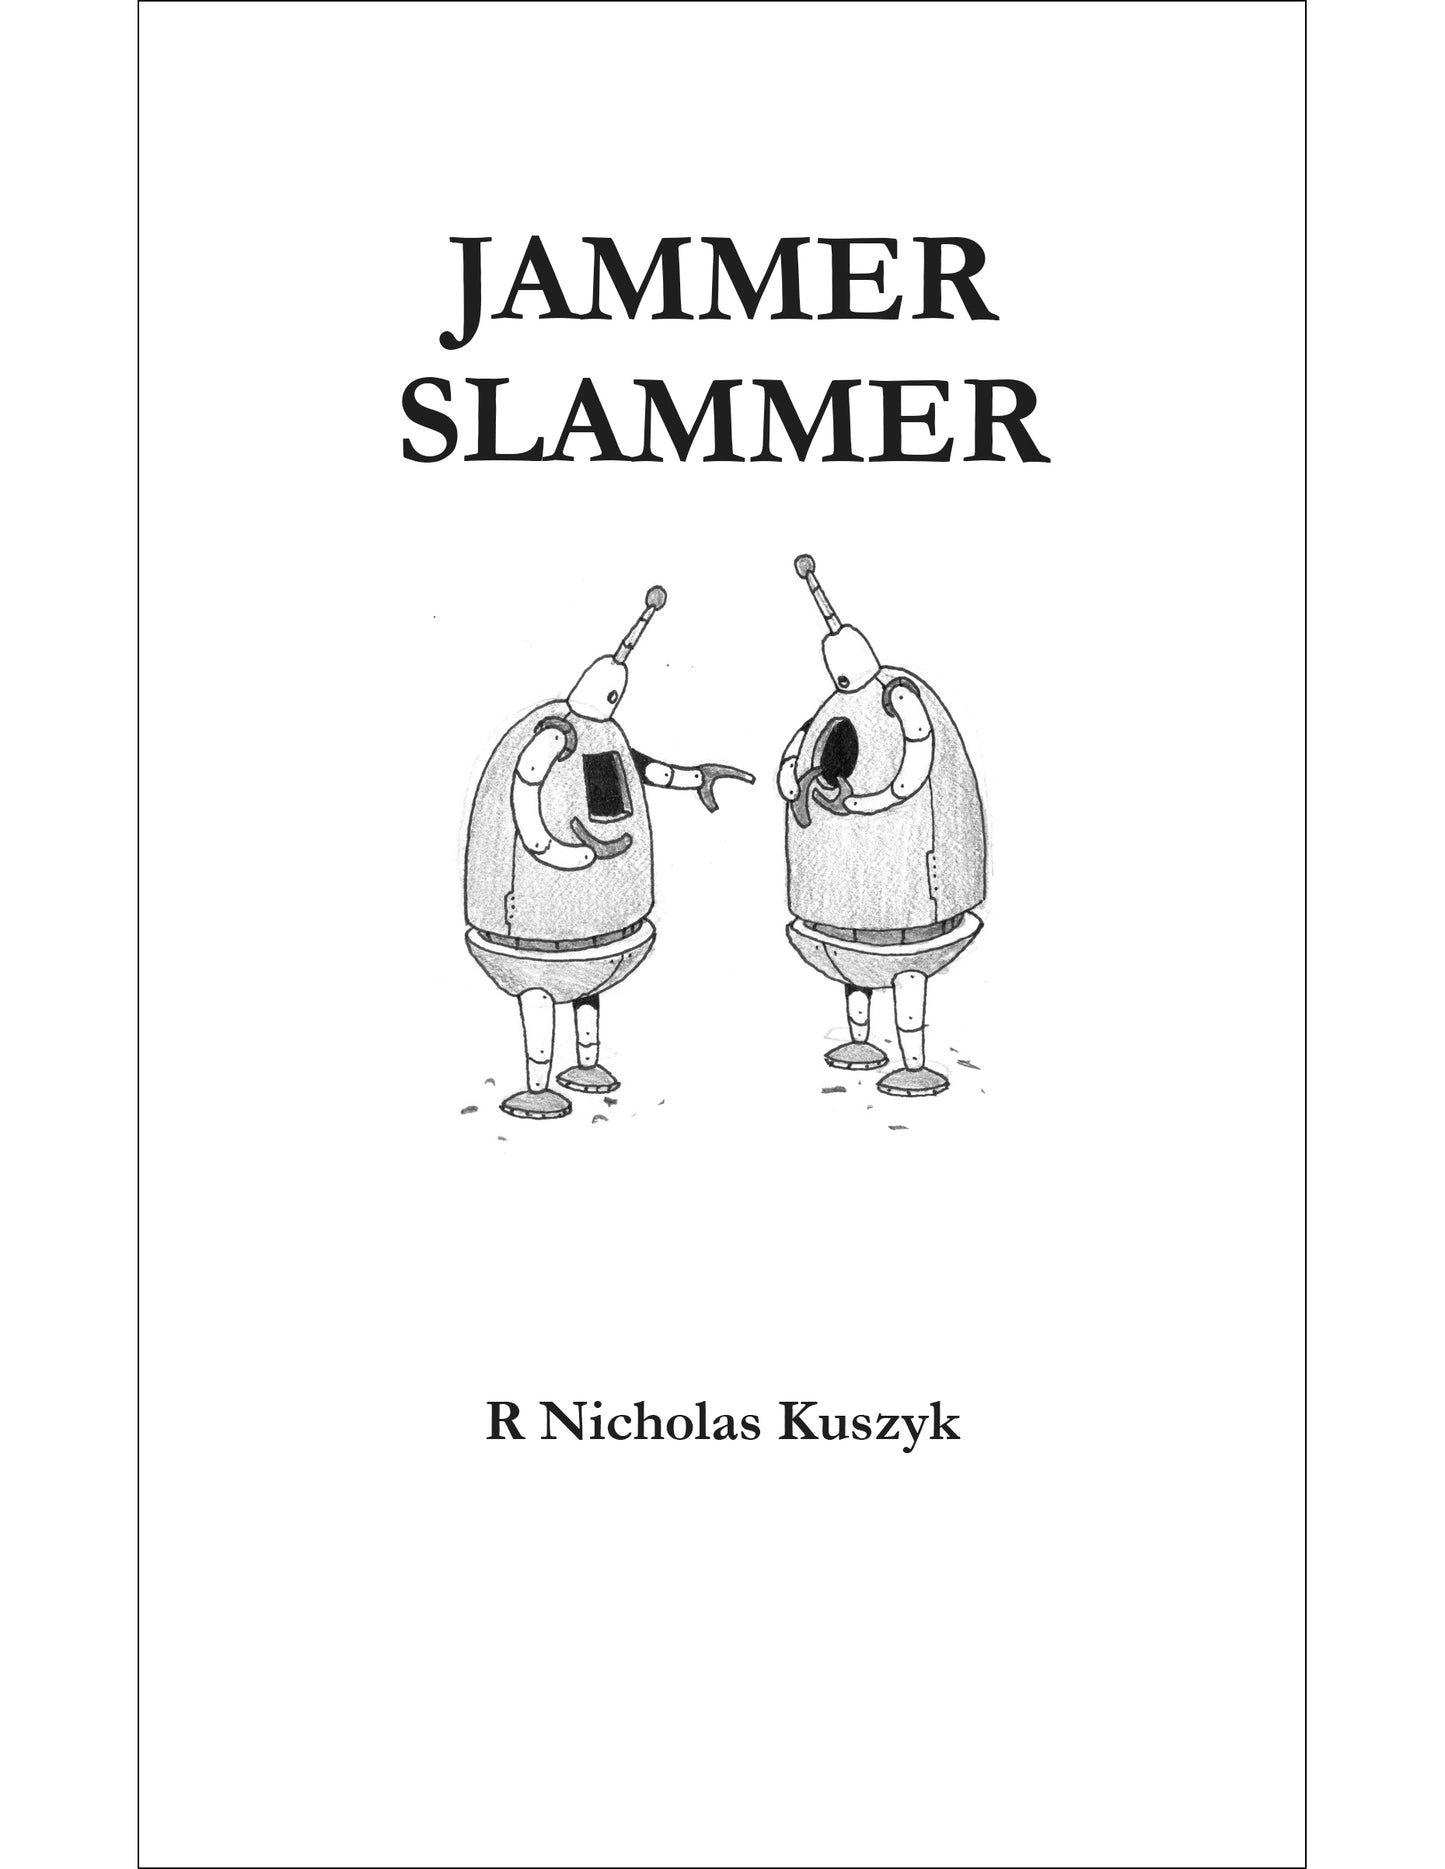 JAMMER SLAMMER: AN EXPLANATORY TEXT